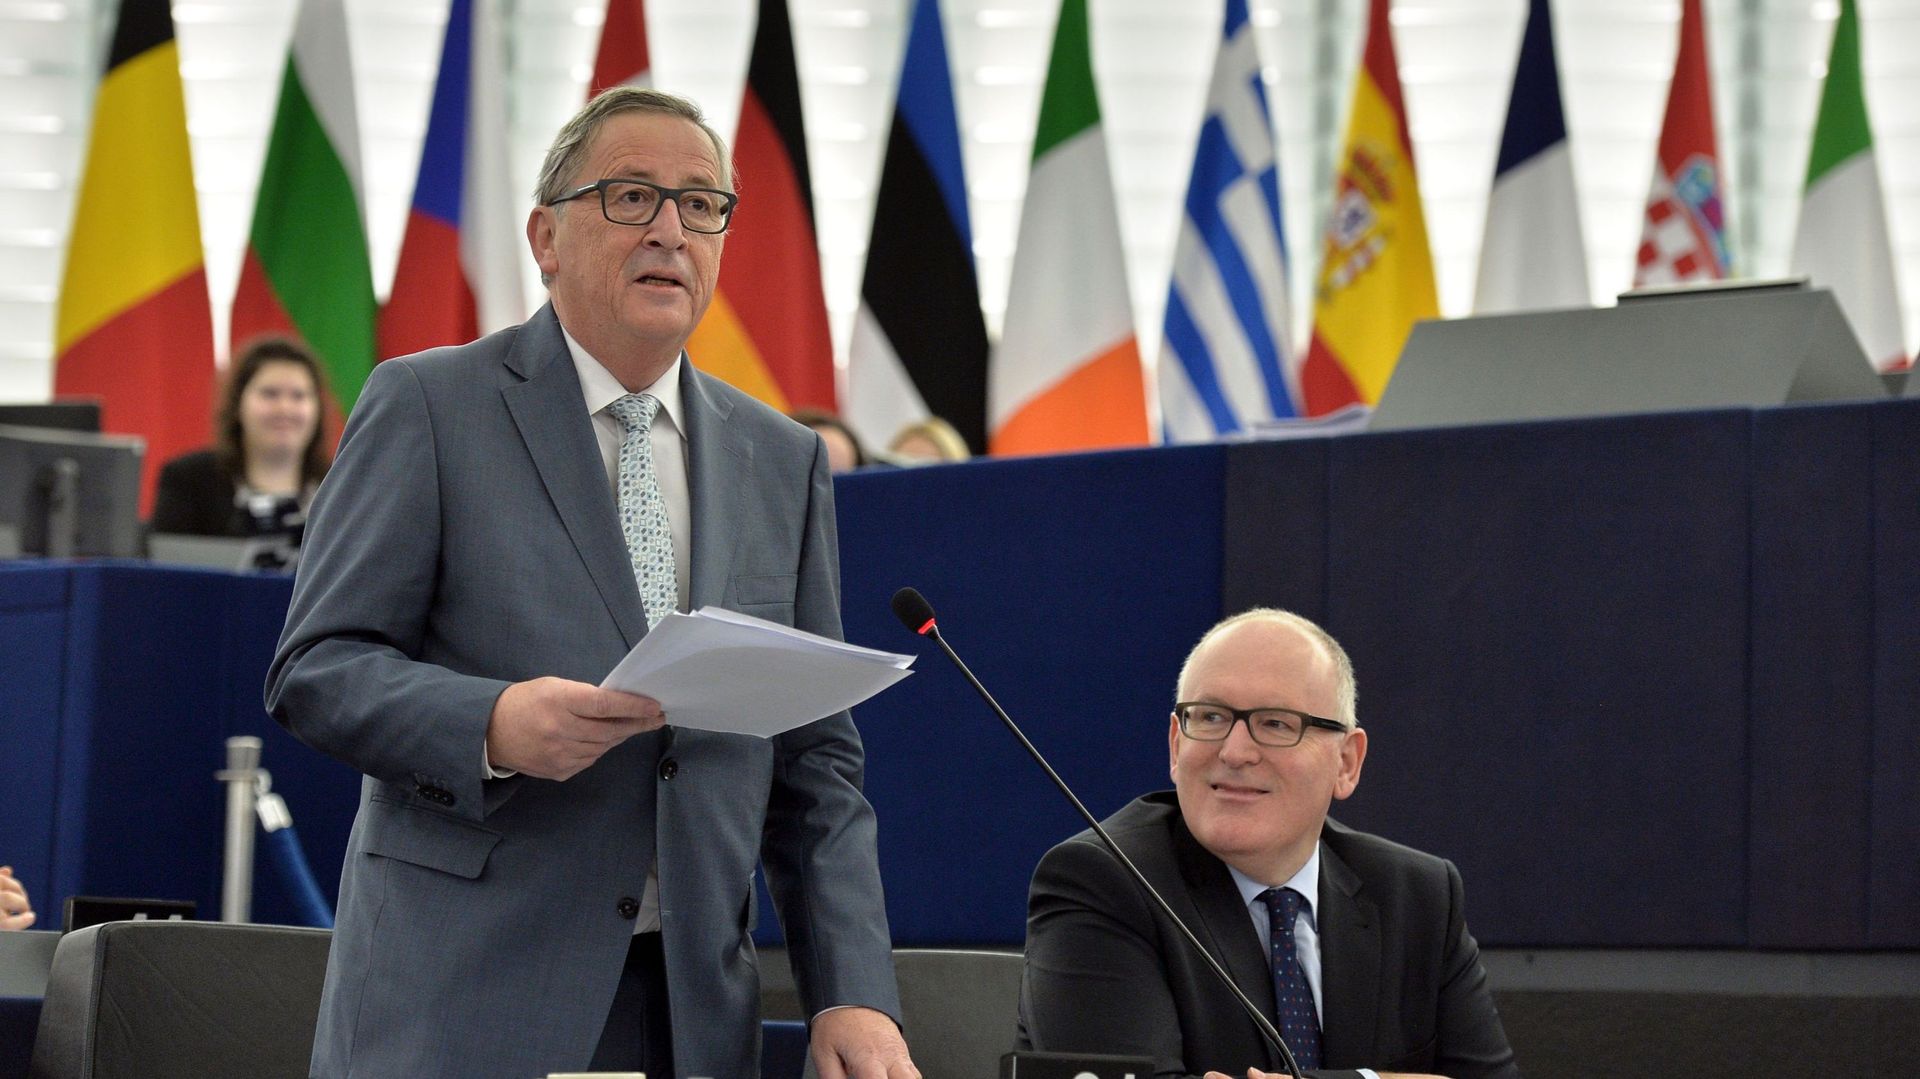 L'espace Schengen est là pour rester", a martelé le président de la Commission européenne Jean-Claude Juncker.